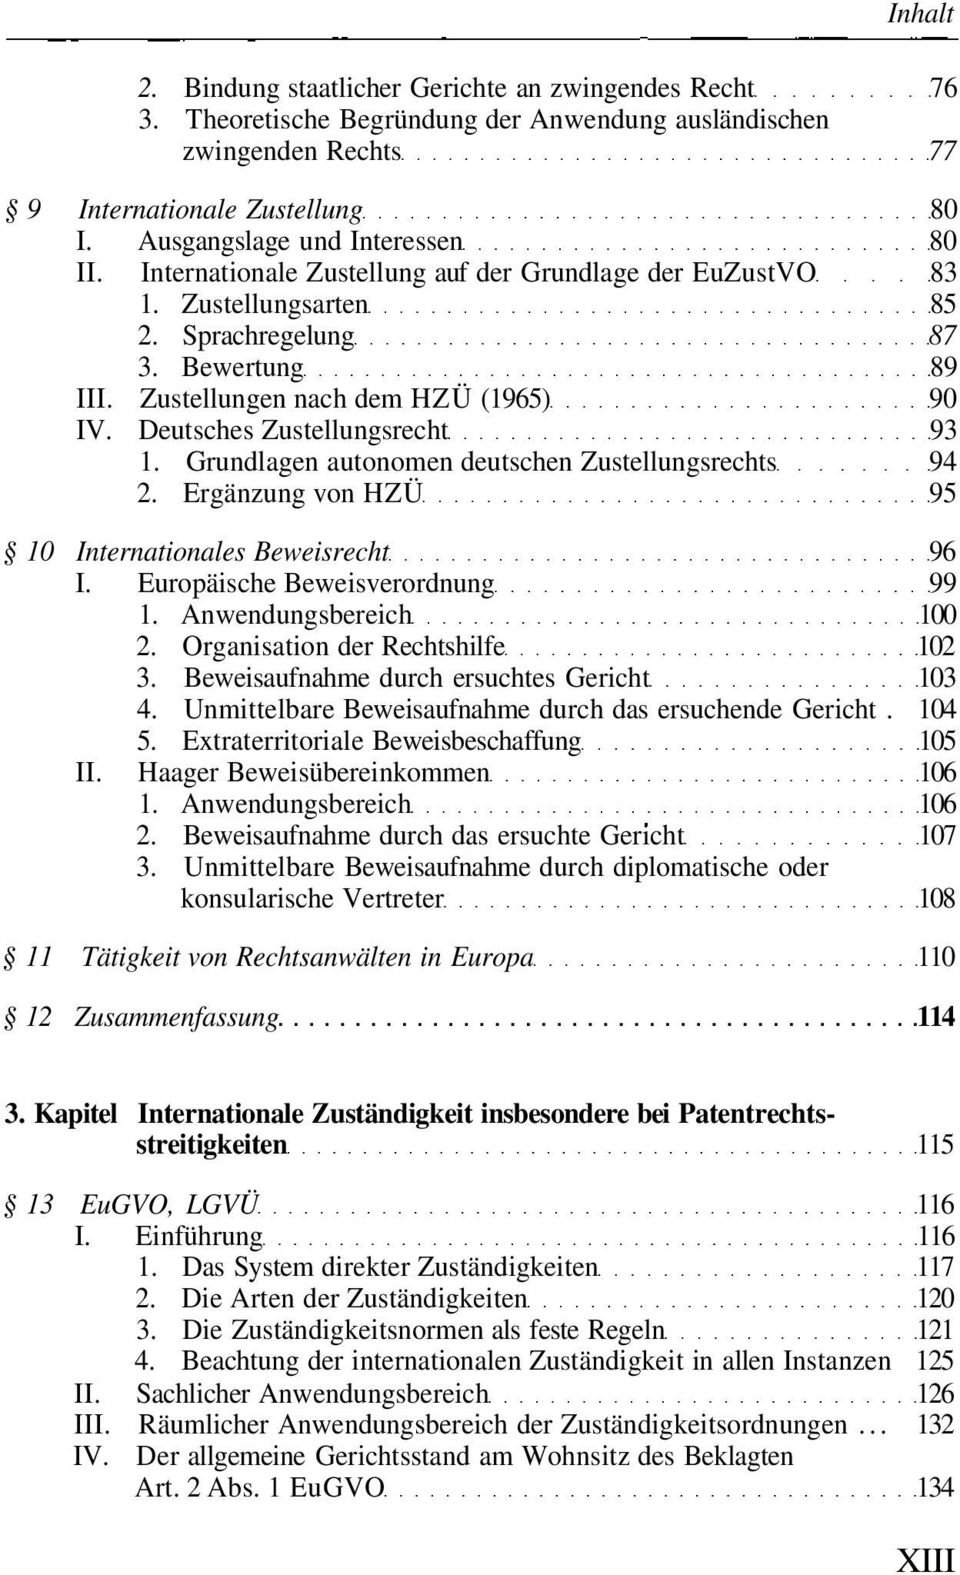 Grundlagen autonomen deutschen Zustellungsrechts 94 2. Ergänzung von HZÜ 95 10 Internationales Beweisrecht 96 I. Europäische Beweisverordnung 99 1. Anwendungsbereich 100 2.